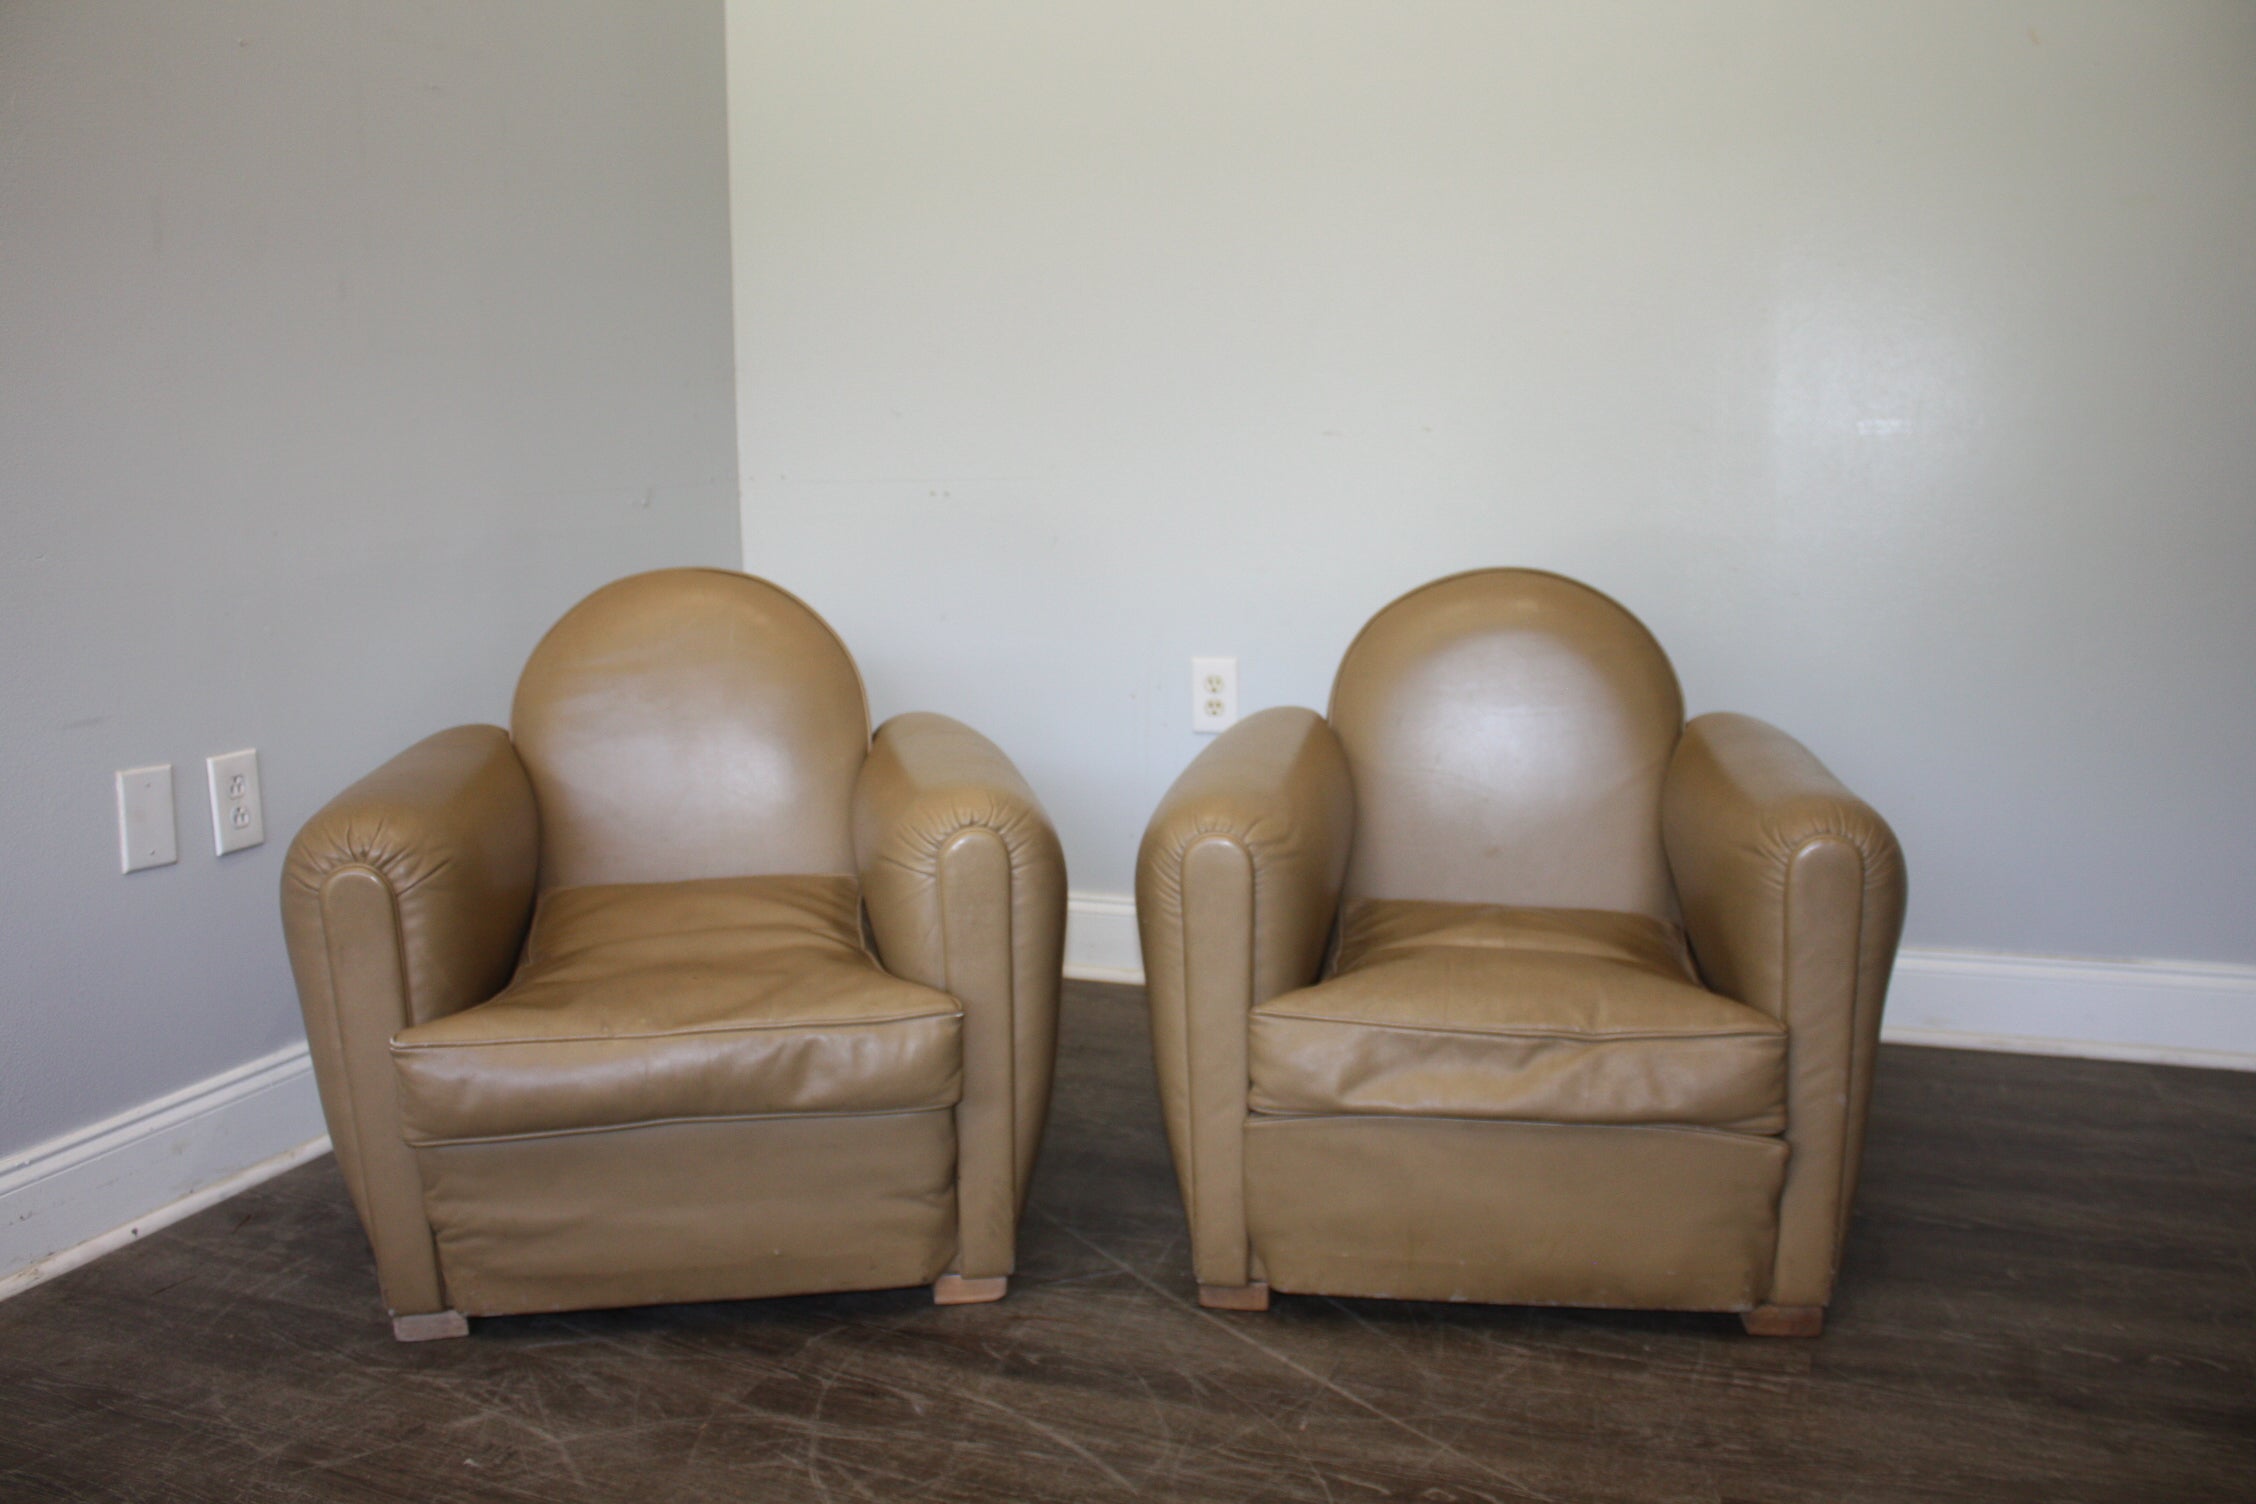 Ces chaises Club sont petites, idéales pour une petite pièce, très confortables et sont fabriquées en cuir de couleur beige/gris.